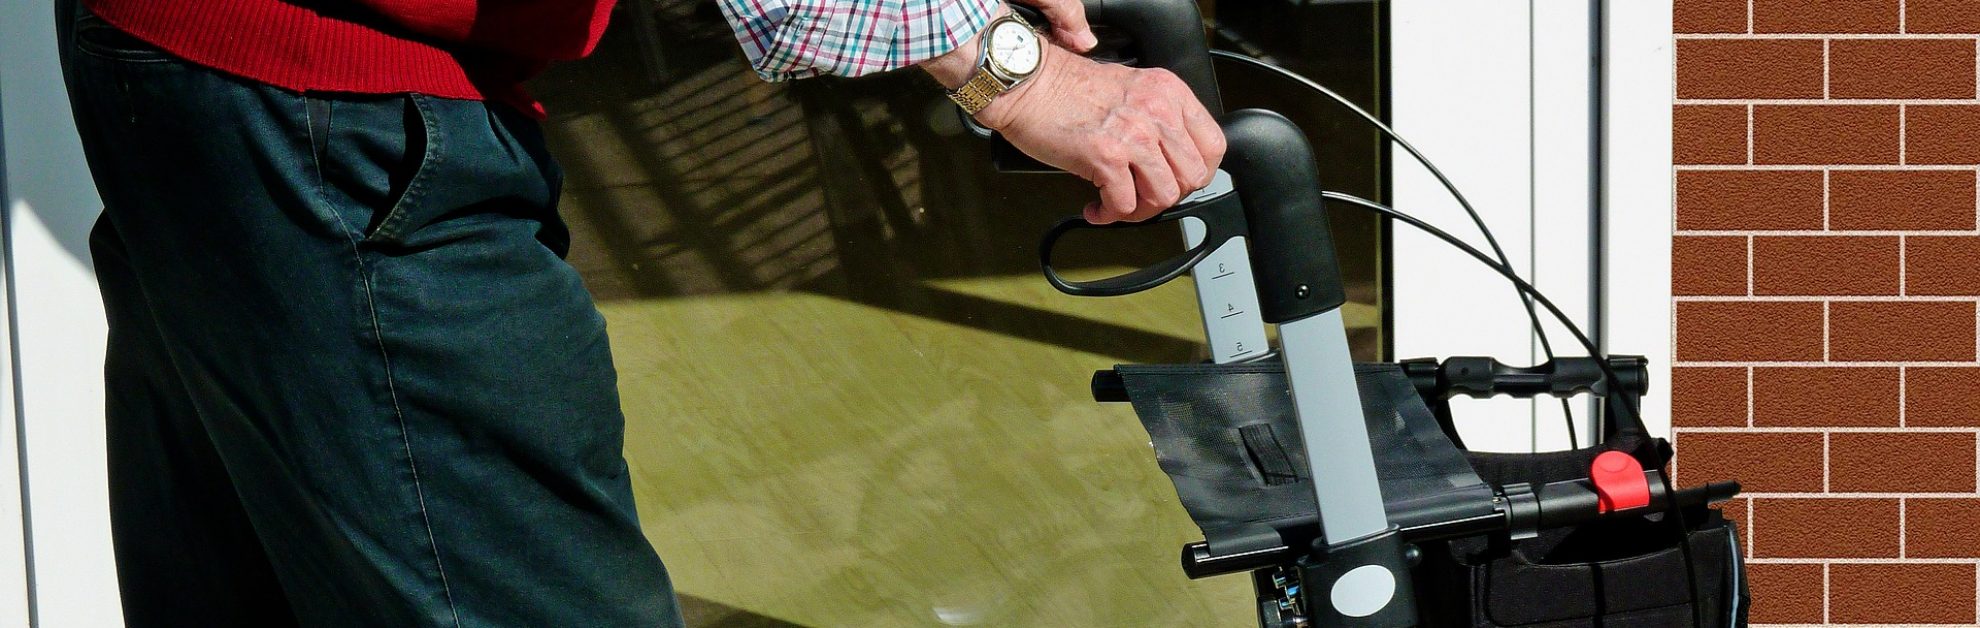 Older man pushing a wheelchair